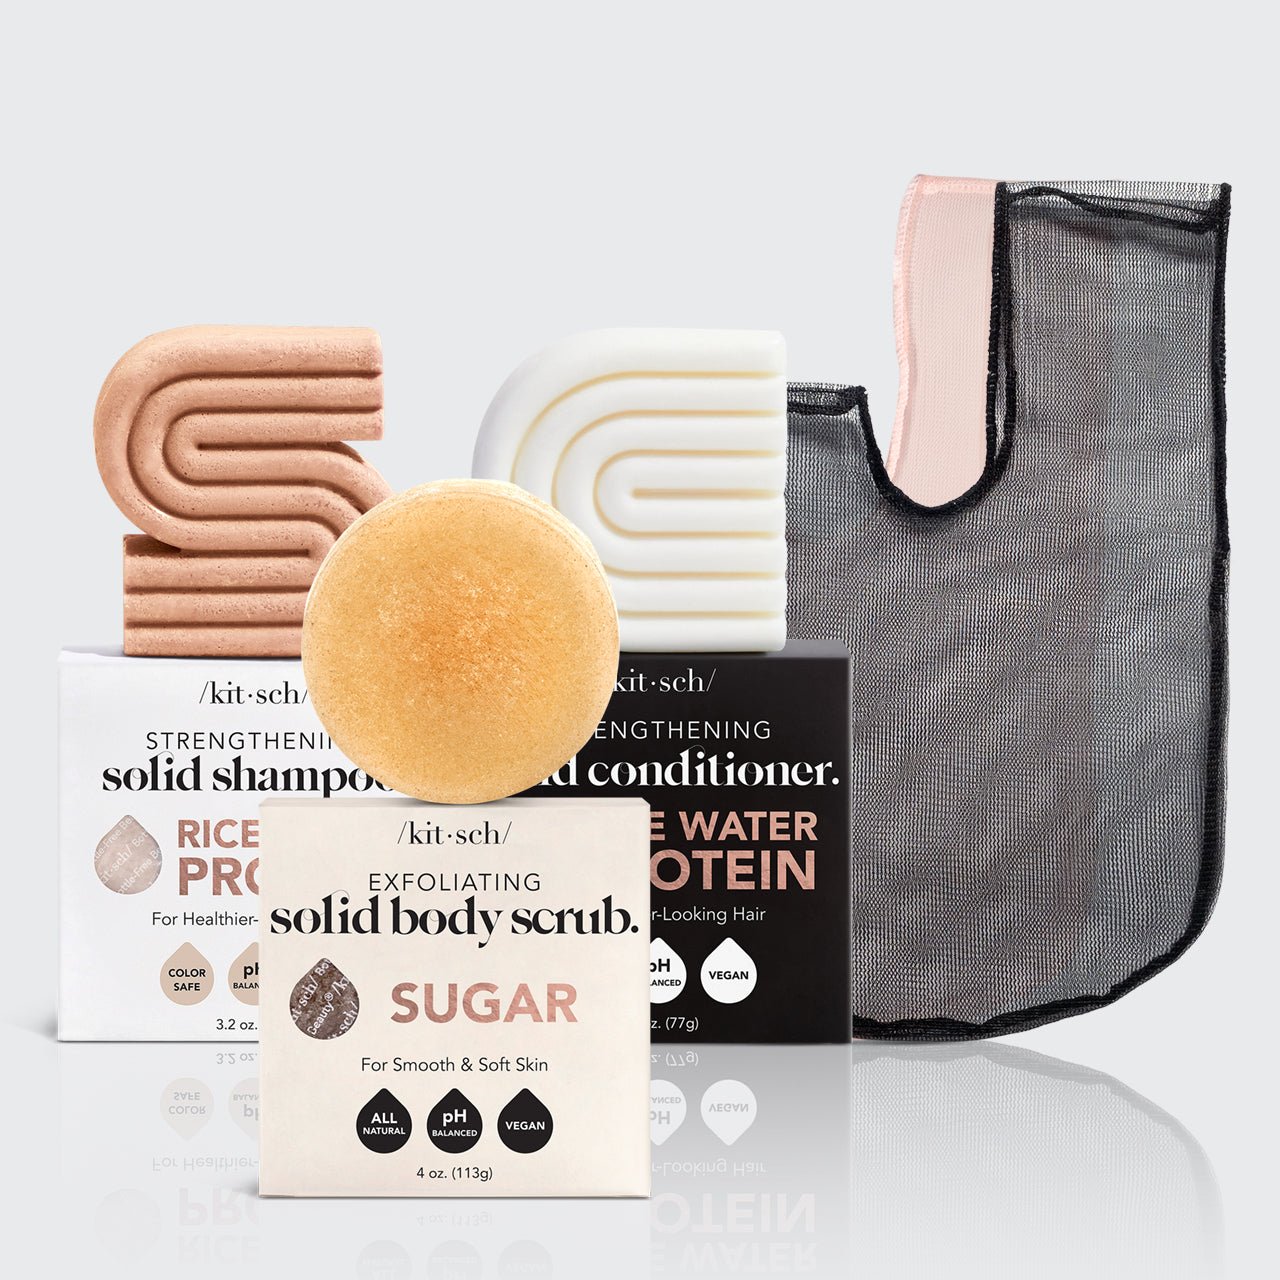 Σαμπουάν & Conditioner για την ανάπτυξη των μαλλιών με νερό ρυζιού + πακέτο απολέπισης σώματος με ζάχαρη